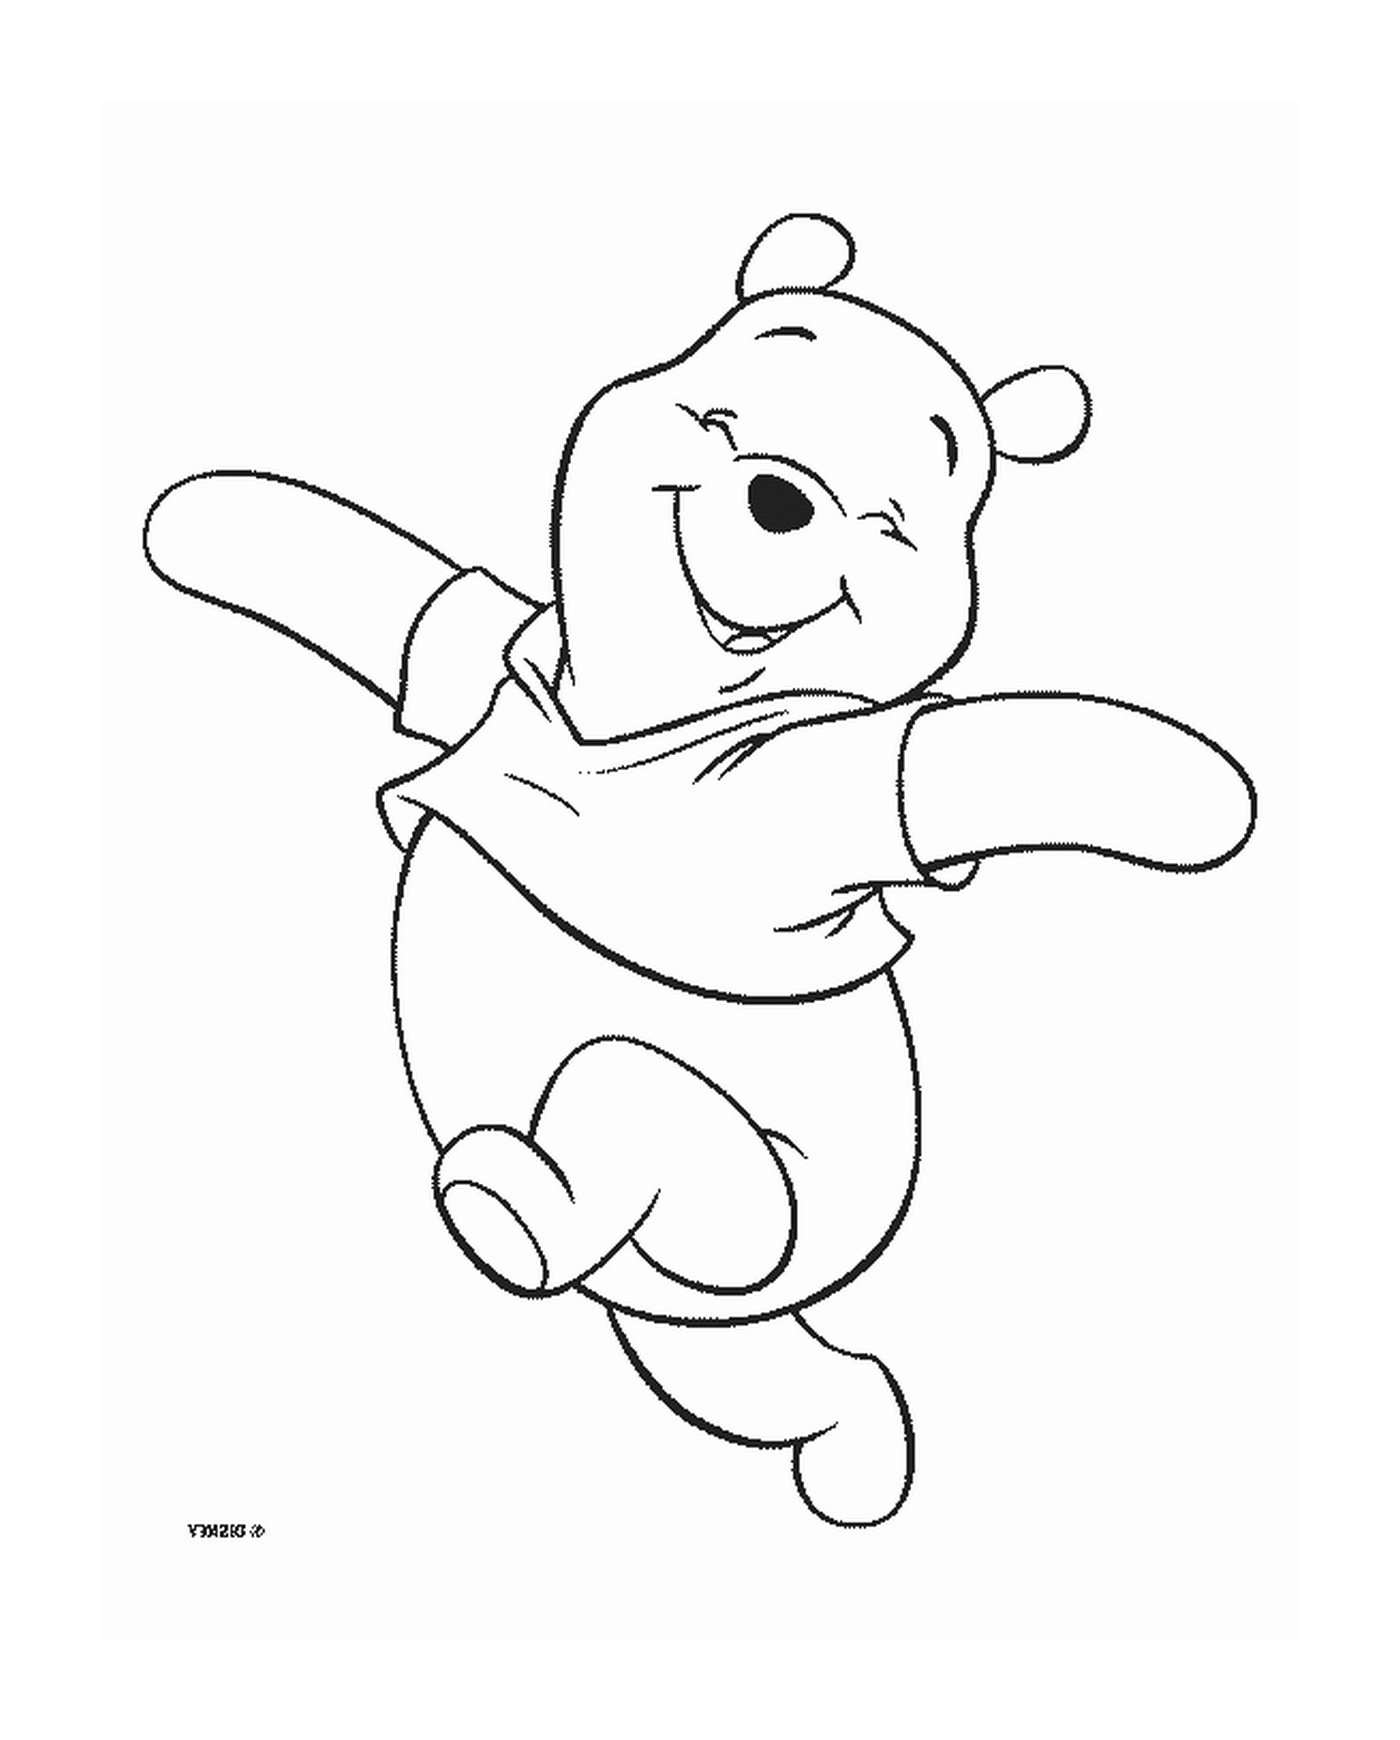  Winnie o urso caminha com alegria 